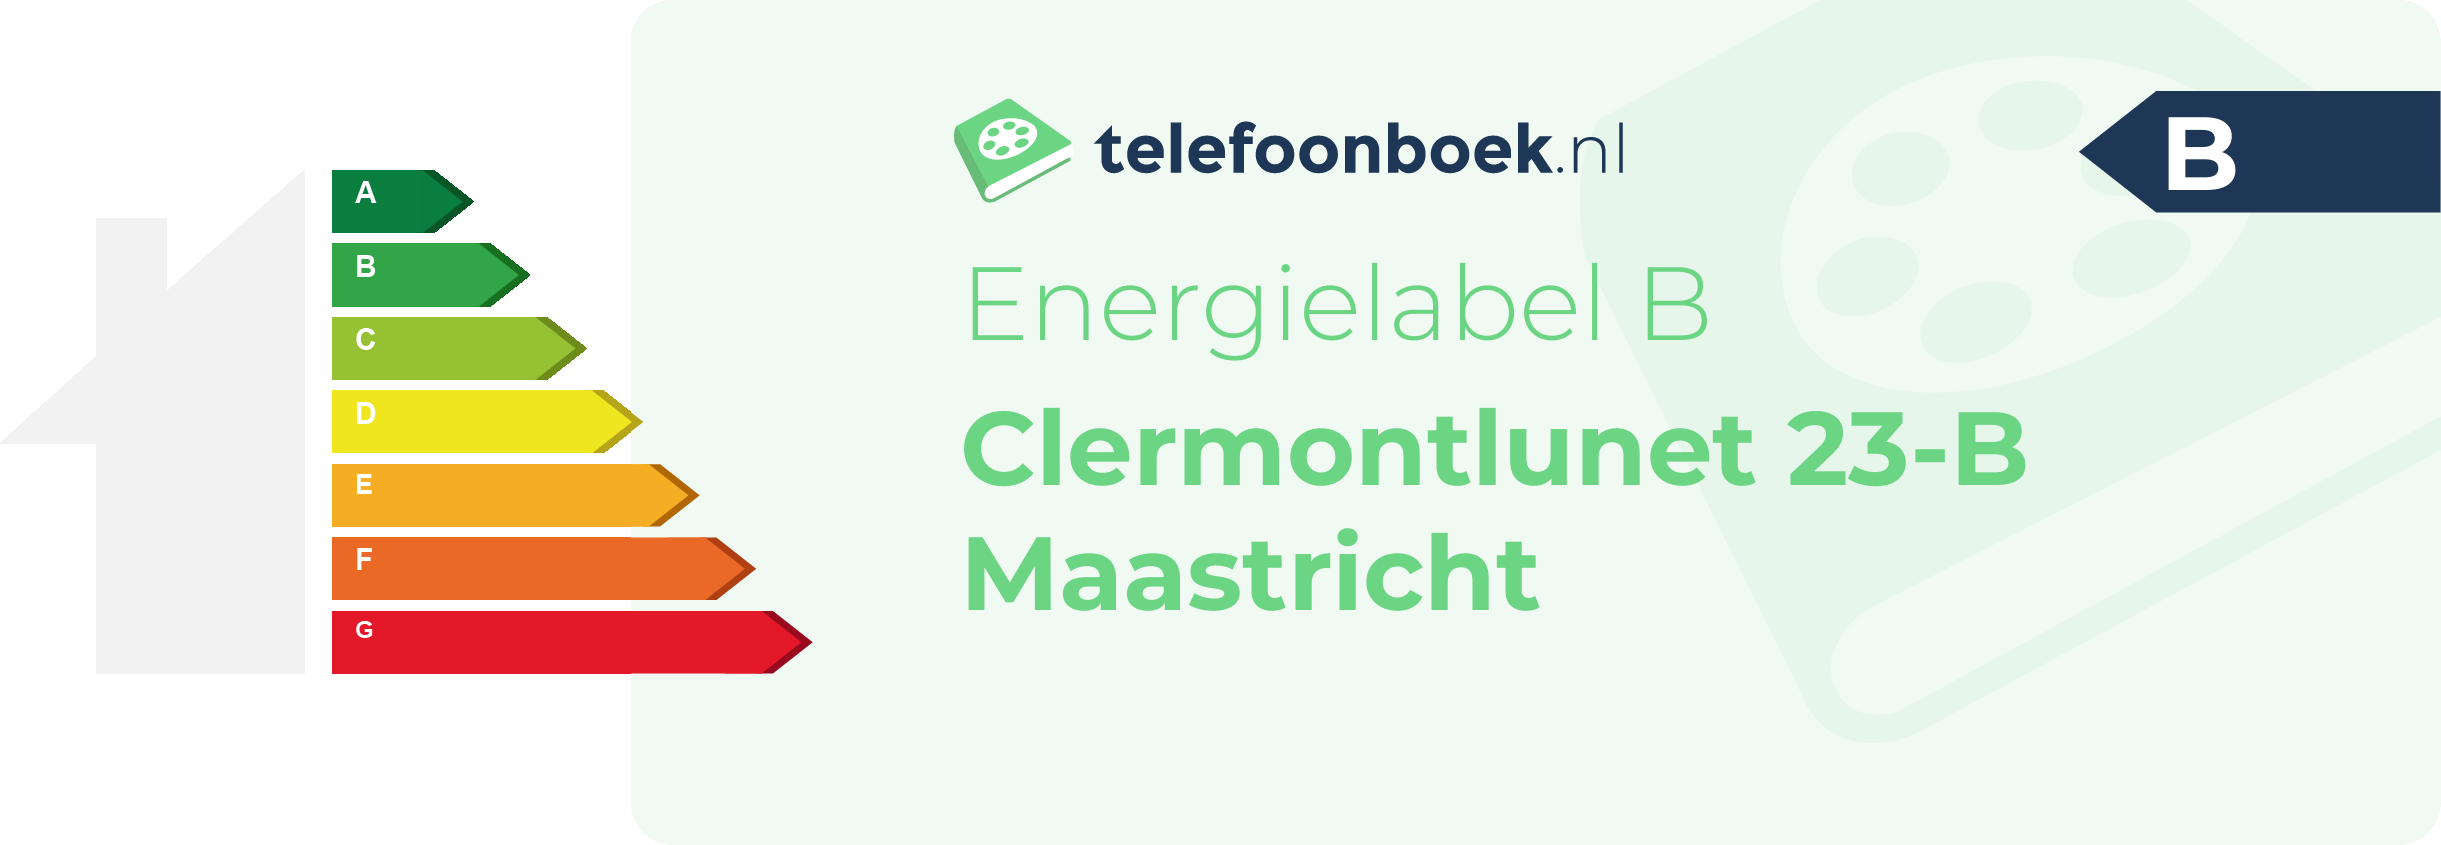 Energielabel Clermontlunet 23-B Maastricht